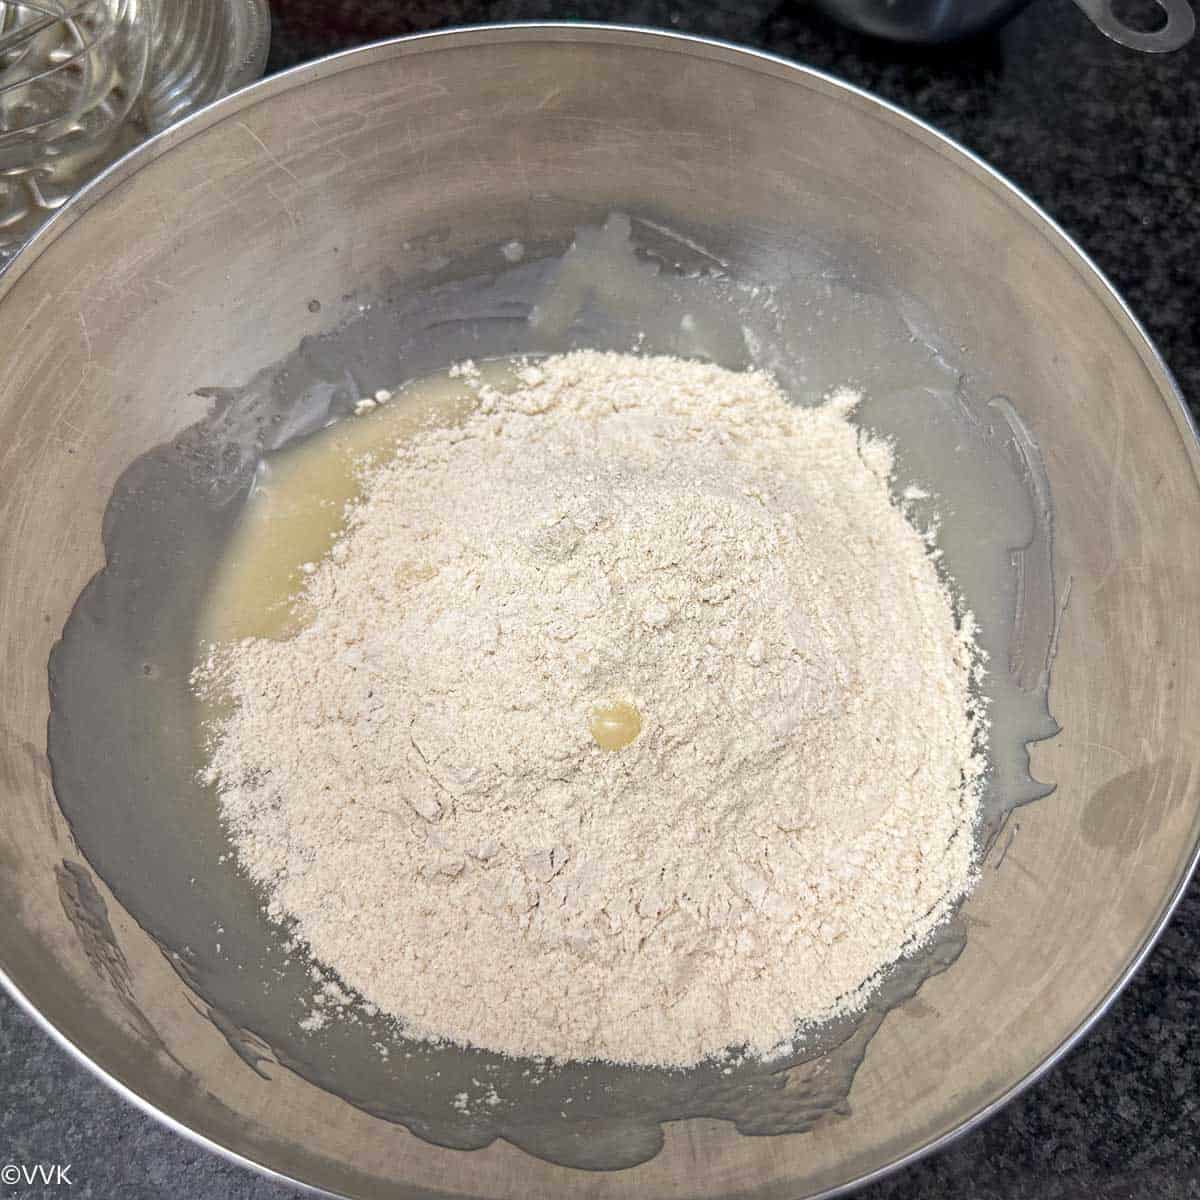 adding wheat flour to this mix